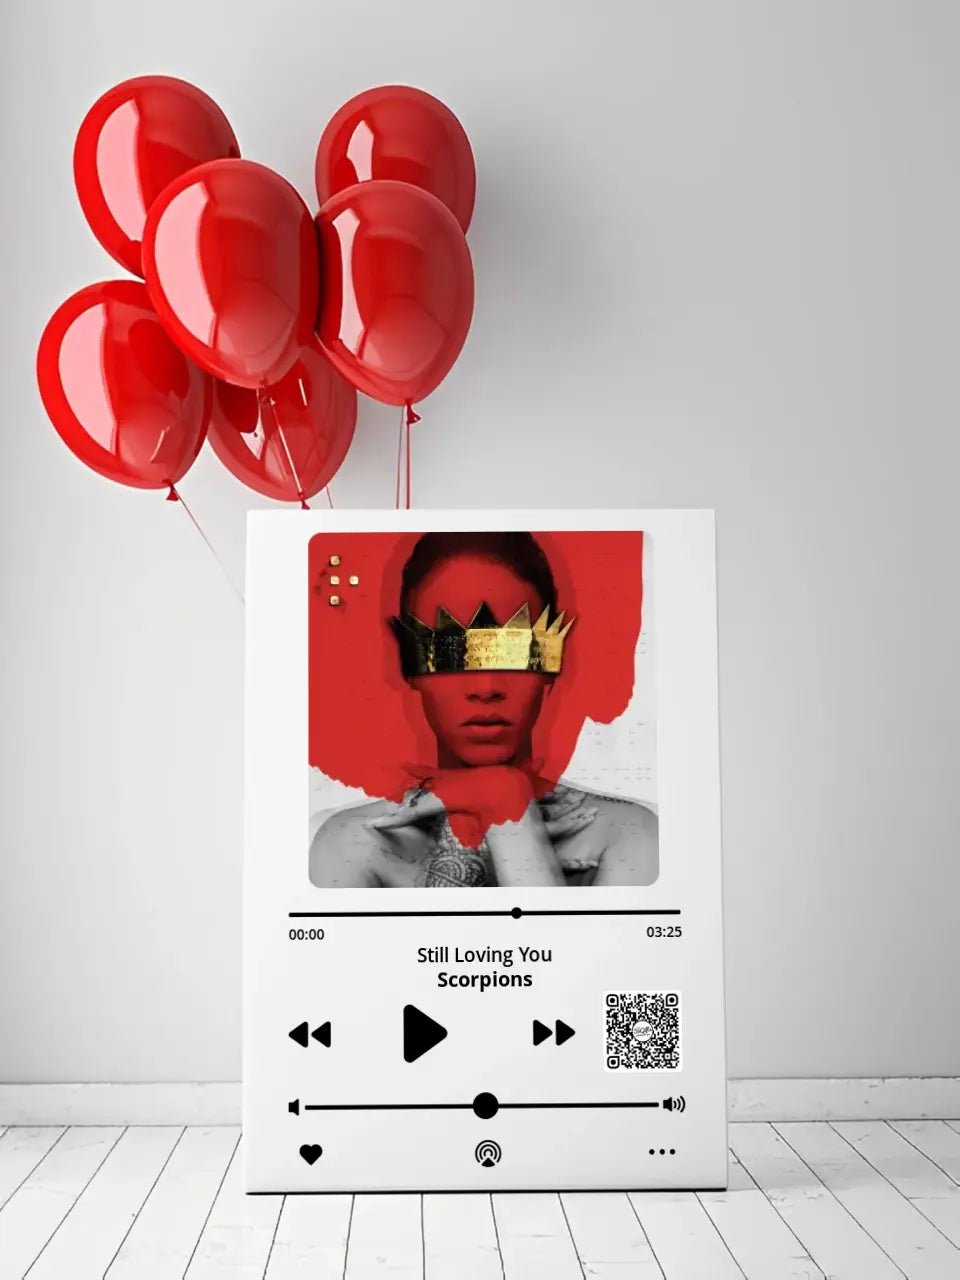 Personalizuotas "Apple Music" kūrinys su jūsų nuotrauka ir daina ant drobės